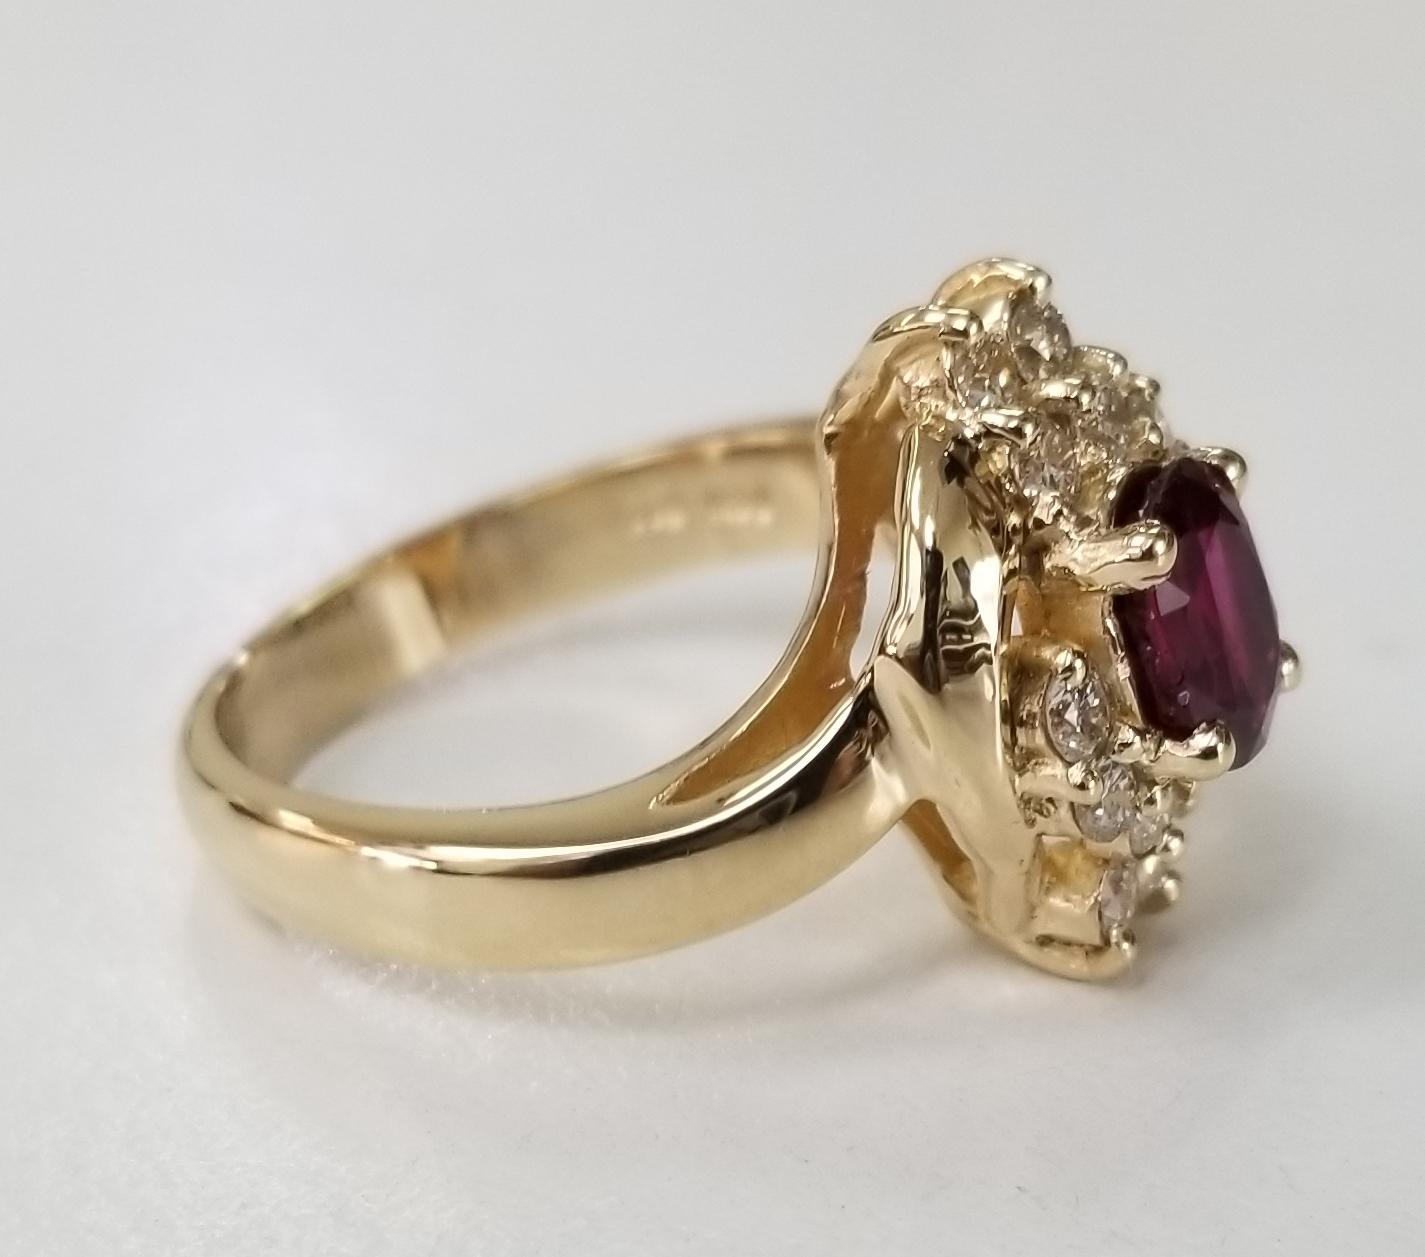 14 Karat Gelbgold, ovaler Rubin-Diamant-Ring, mit 1 ovalen Rubin von Edelsteinqualität mit einem Gewicht von 1,15cts, umgeben von 10 runden Diamanten im Vollschliff von feiner Qualität mit einem Gewicht von .42pts.  Dieser Ring ist eine Größe 6,